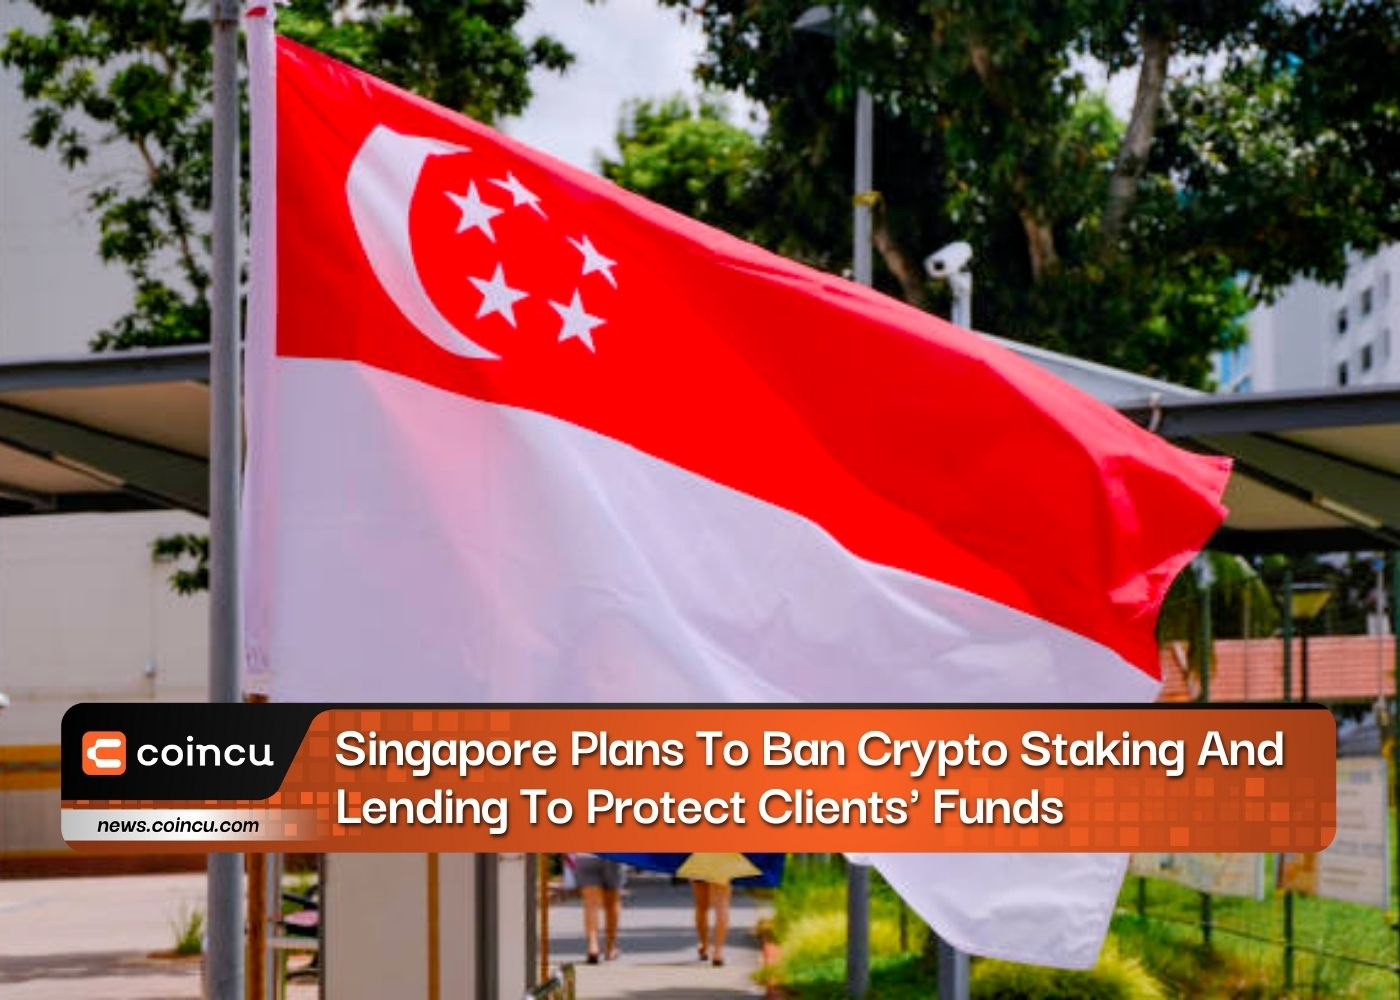 싱가포르, 고객 자금 보호를 위해 암호화폐 스테이킹 및 대출 금지 계획